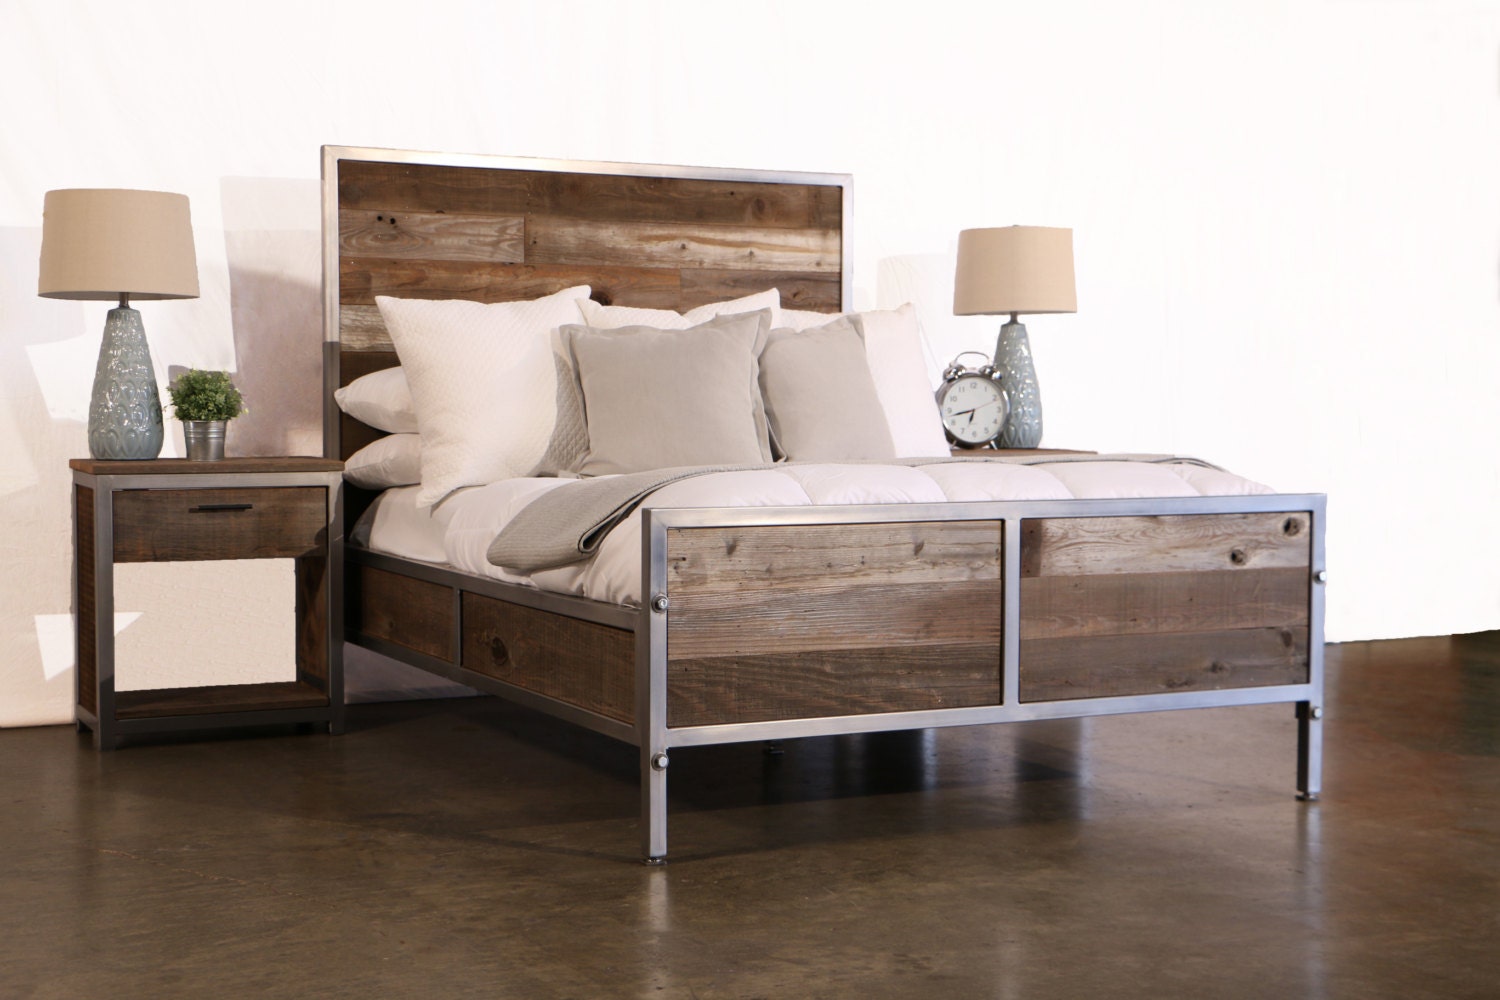 Reclaimed Wood Industrial Bedroom Set by foundpurpose on Etsy